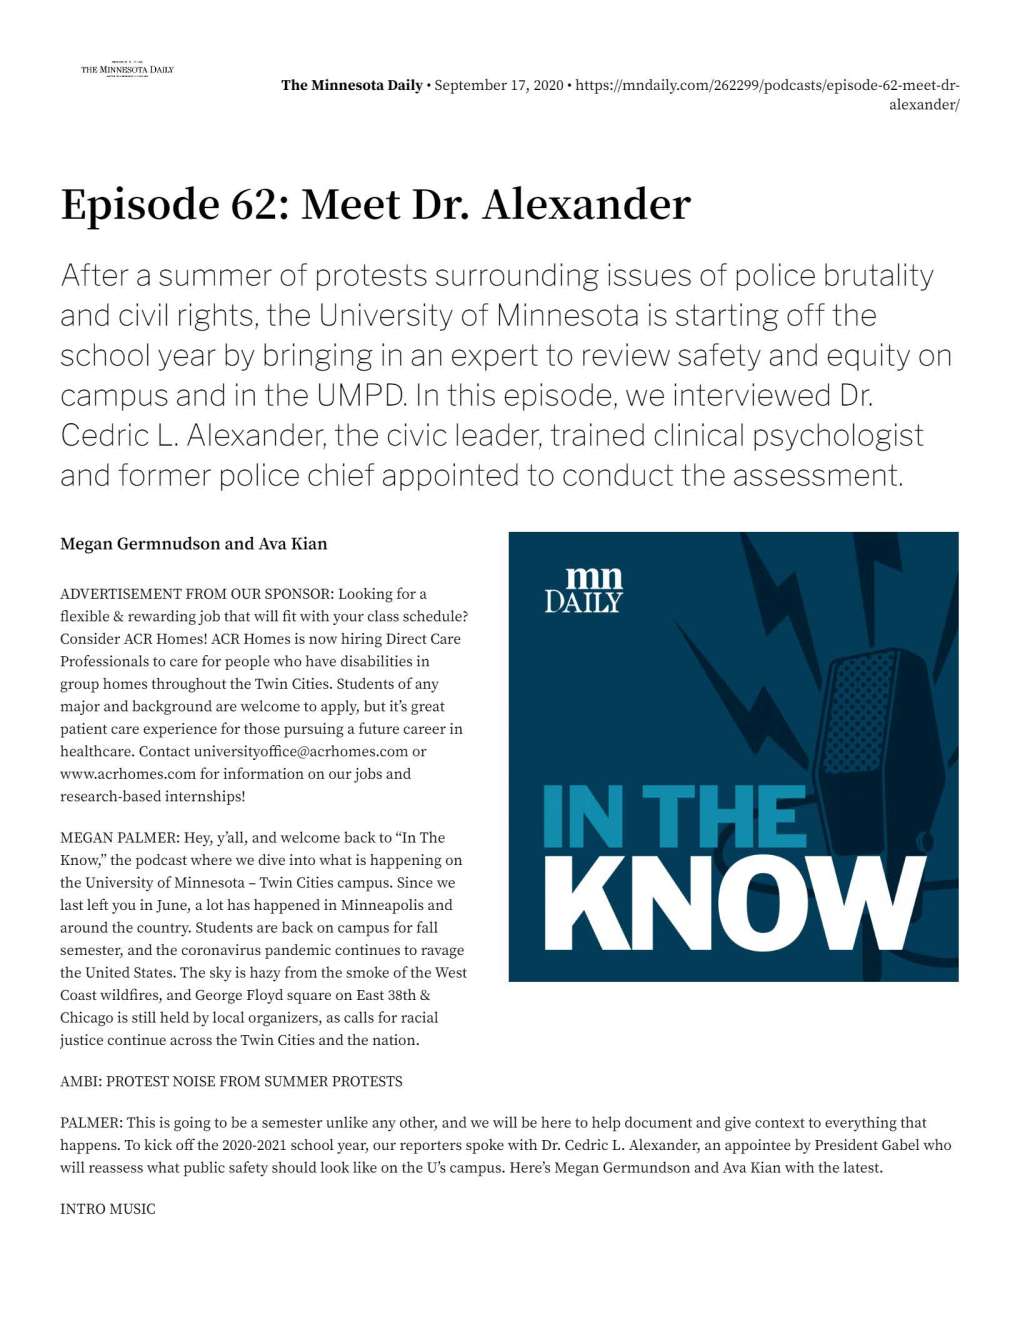 Meet Dr. Alexander